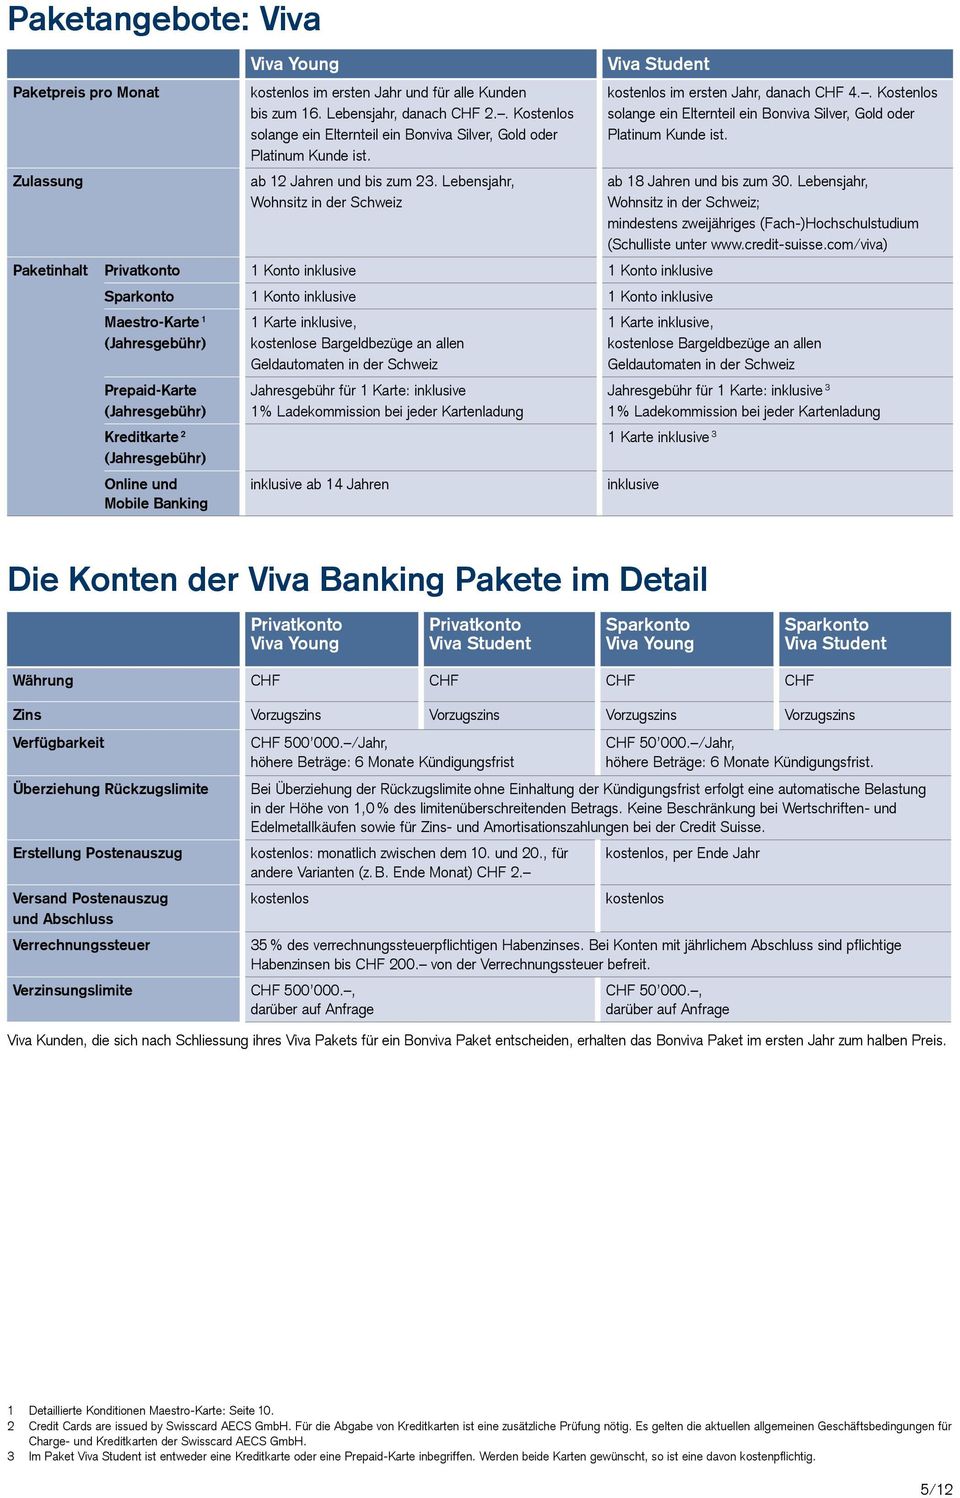 Lebensjahr, Wohnsitz in der Schweiz Paketinhalt Privatkonto 1 Konto inklusive 1 Konto inklusive Sparkonto 1 Konto inklusive 1 Konto inklusive Maestro-Karte 1 (Jahresgebühr) Prepaid-Karte